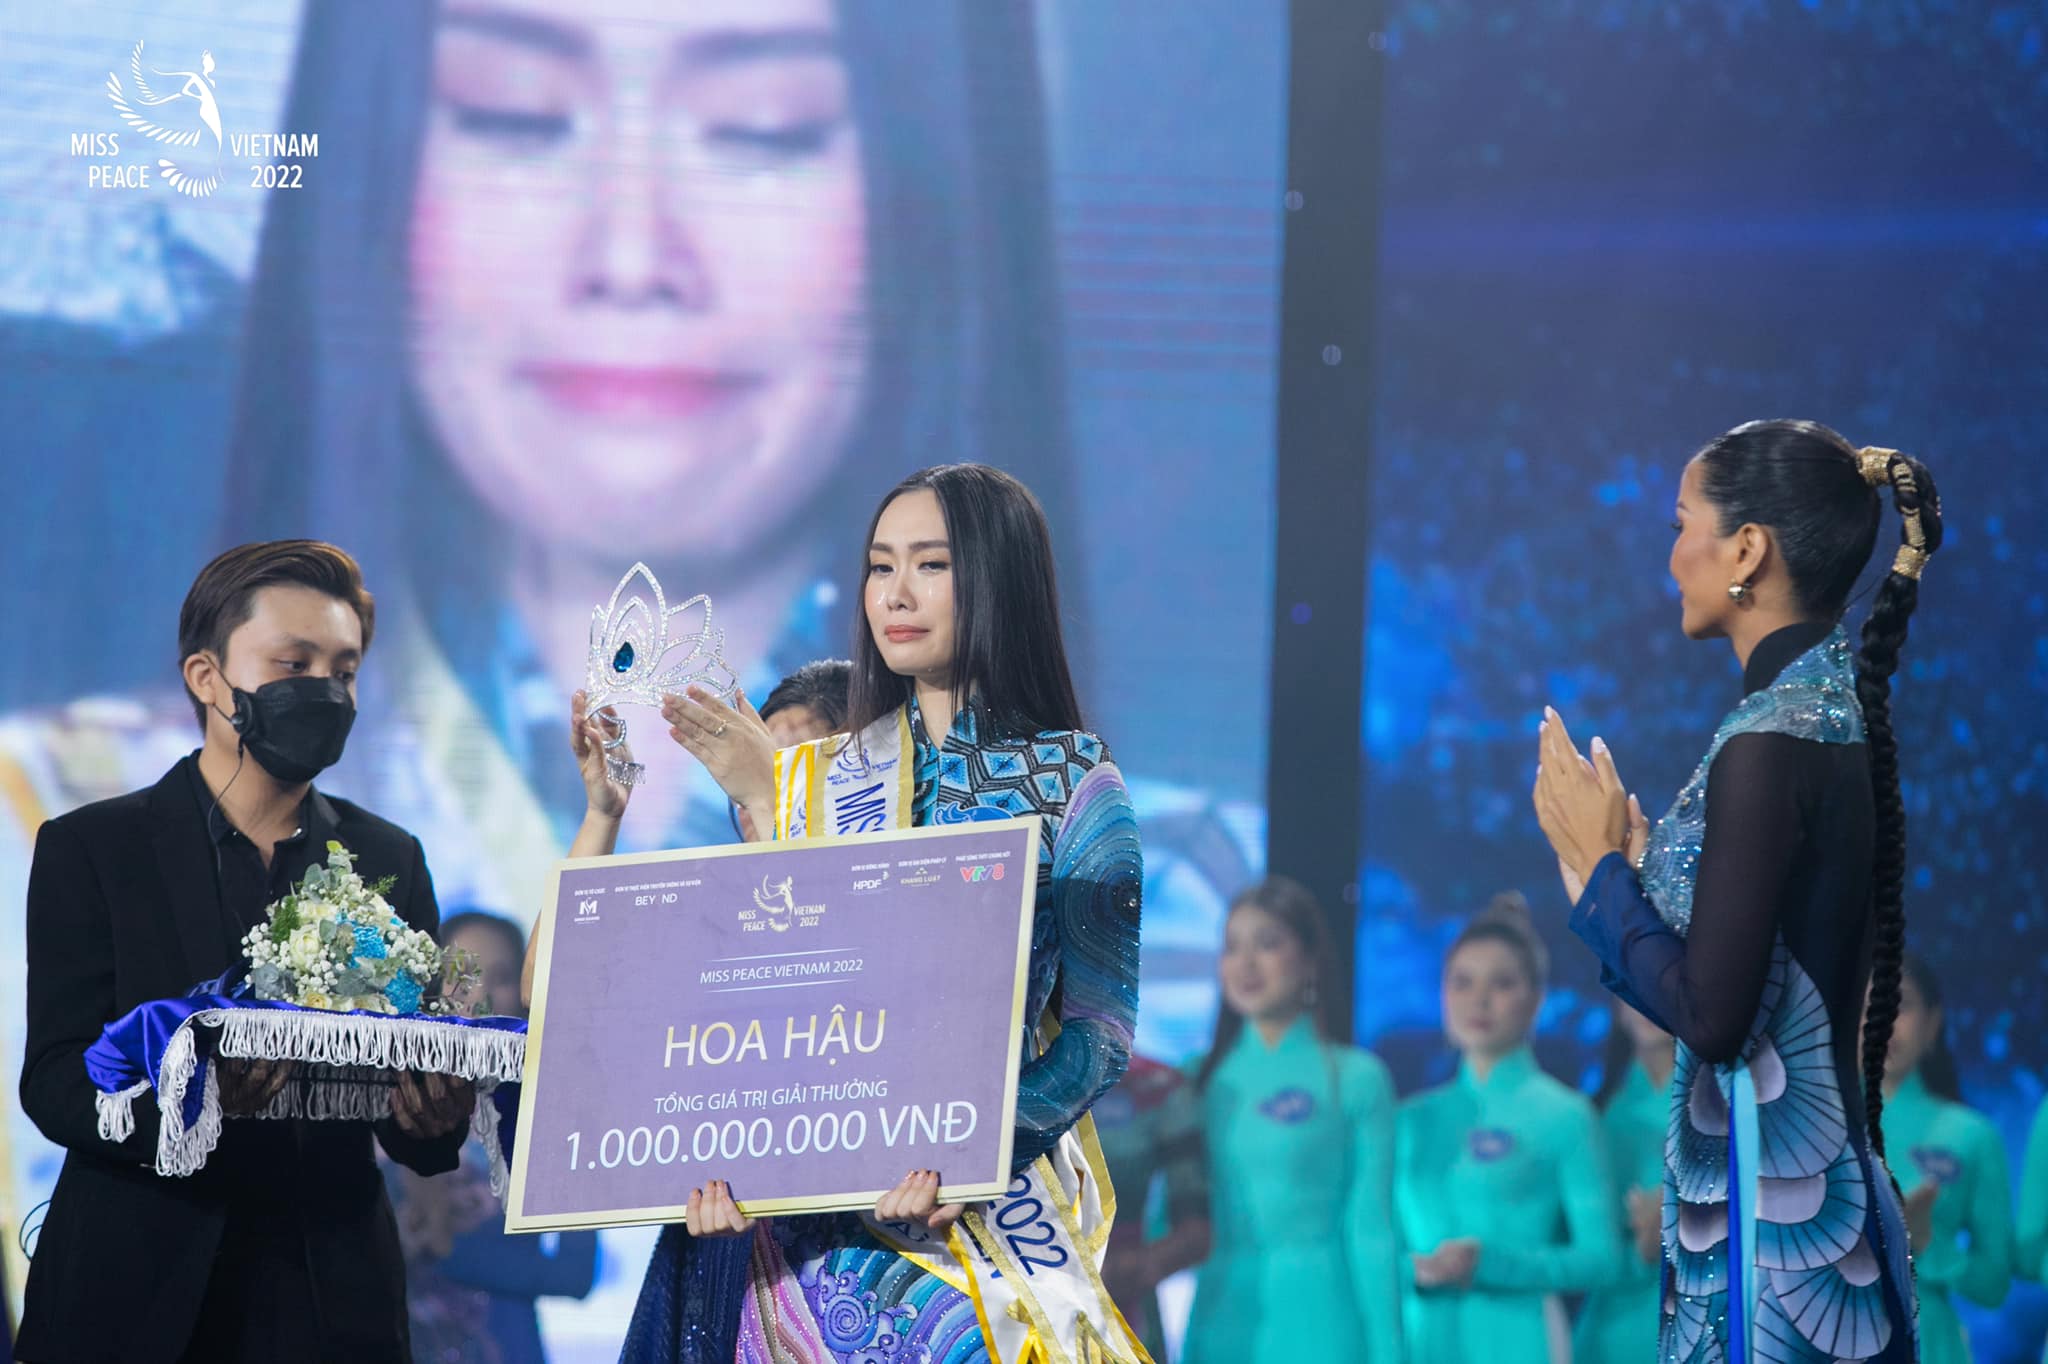 Miss Peace Vietnam 2022 Ban Mai: “Mọi người nói tôi học giỏi nhưng không đẹp” - 4